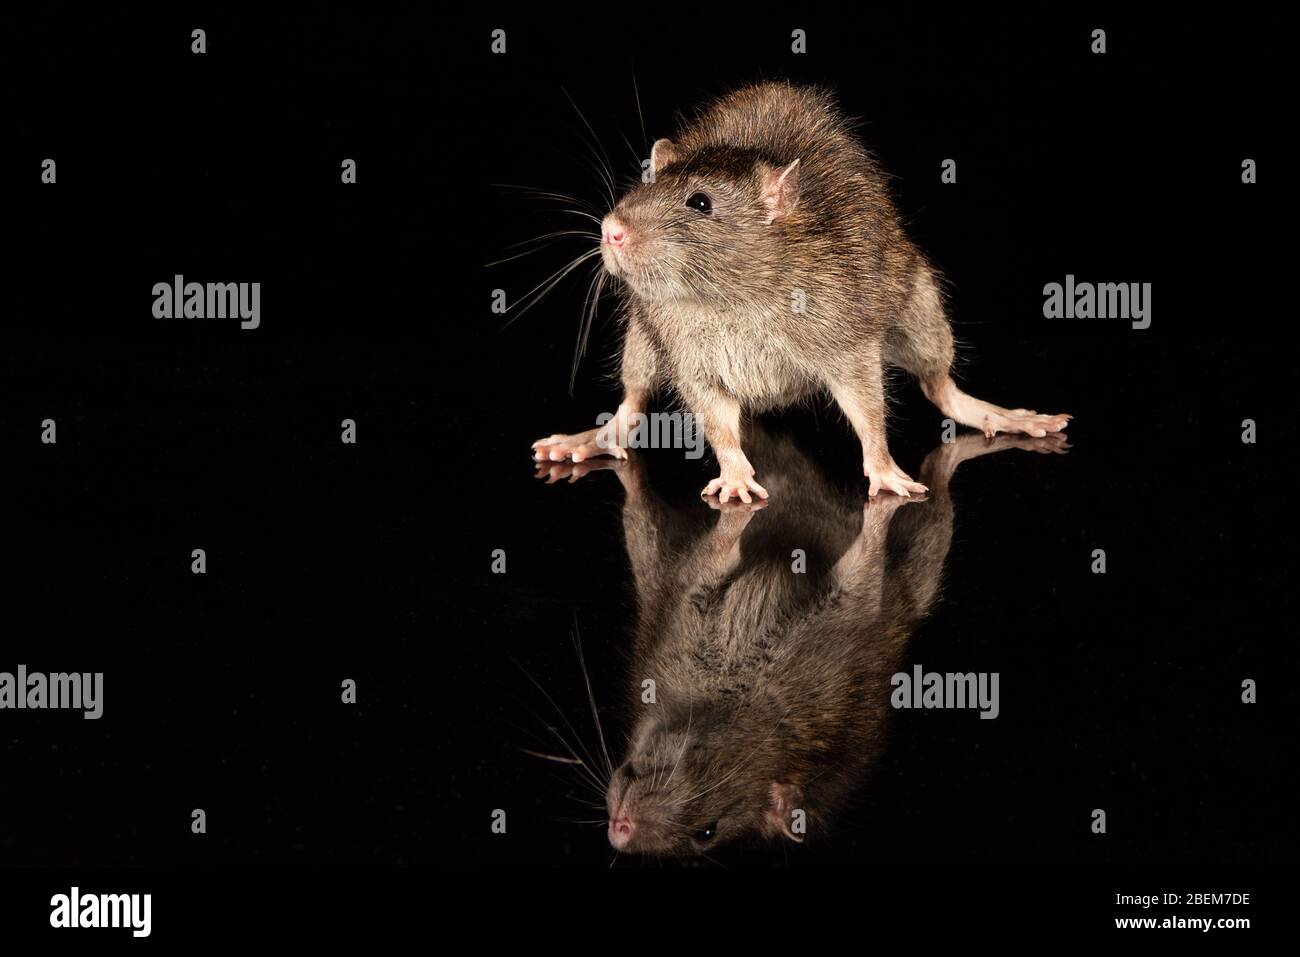 Rat commun sur une surface réfléchissante. Le cadre est noir avec espace de copie Banque D'Images